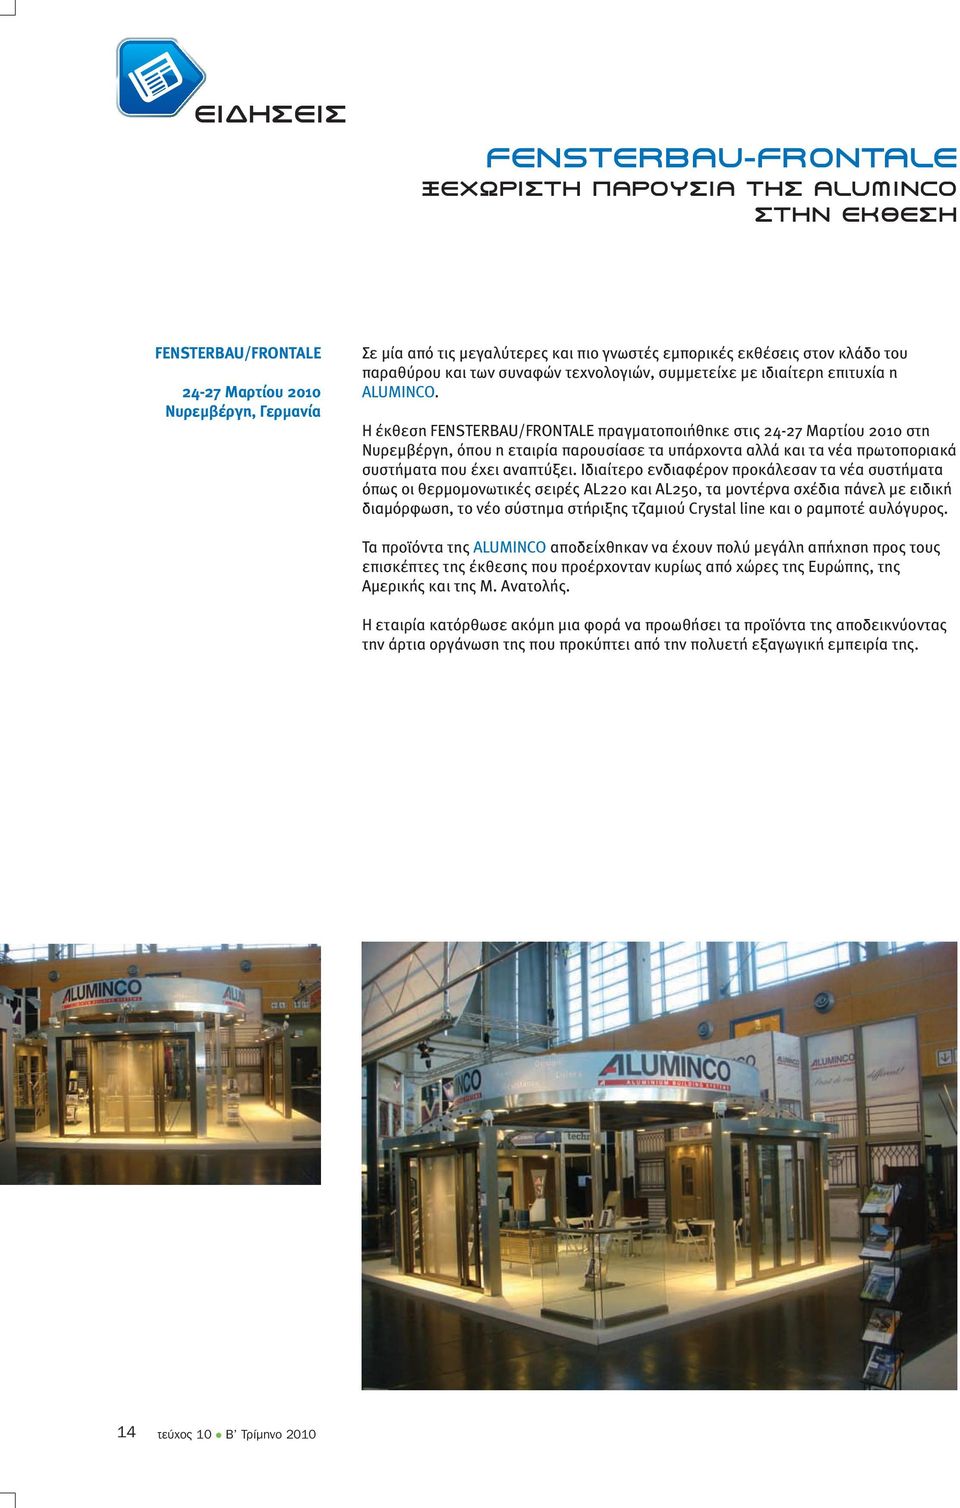 Η έκθεση FENSTERBAU/FRONTALE πραγµατοποιήθηκε στις 24-27 Μαρτίου 2010 στη Νυρεµβέργη, όπου η εταιρία παρουσίασε τα υπάρχοντα αλλά και τα νέα πρωτοποριακά συστήµατα που έχει αναπτύξει.